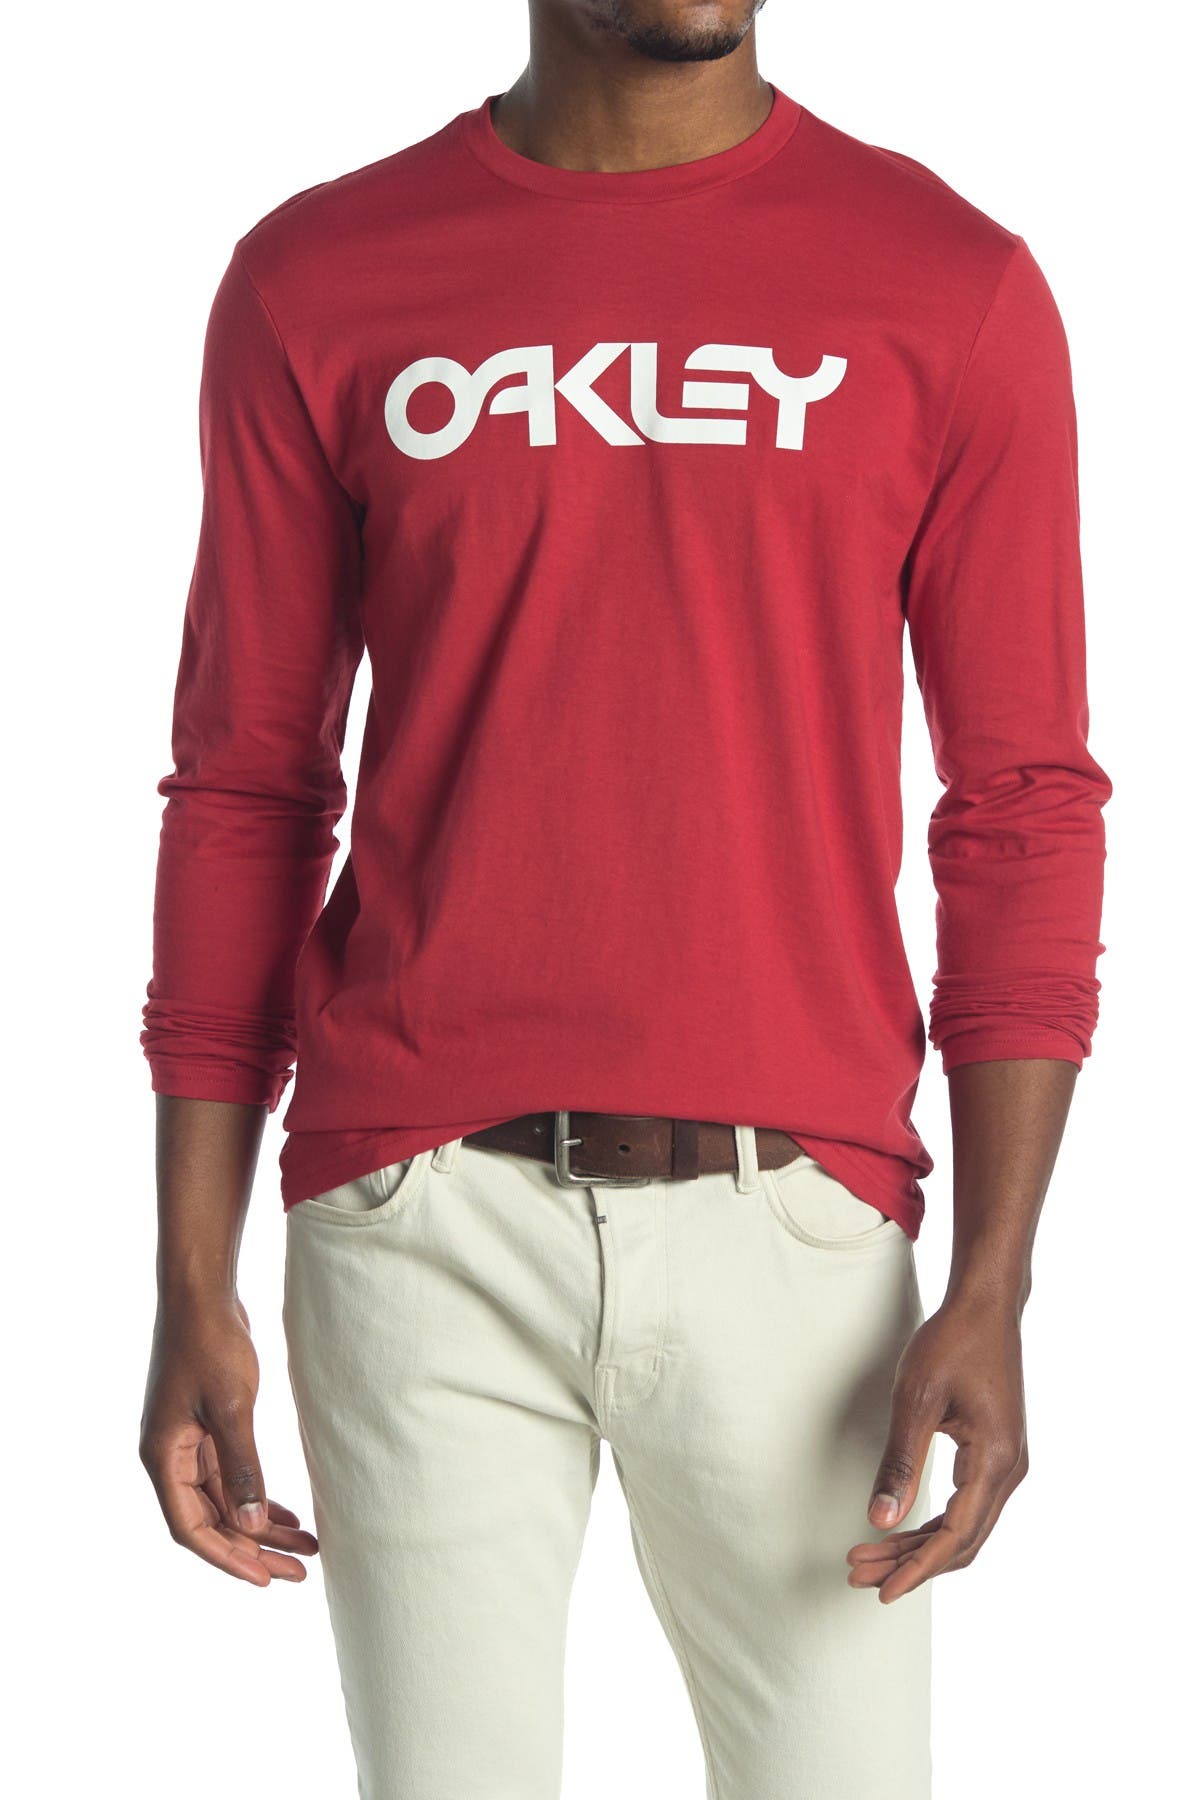 Oakley Marc Ii Long Sleeve T-shirt In Samba Red